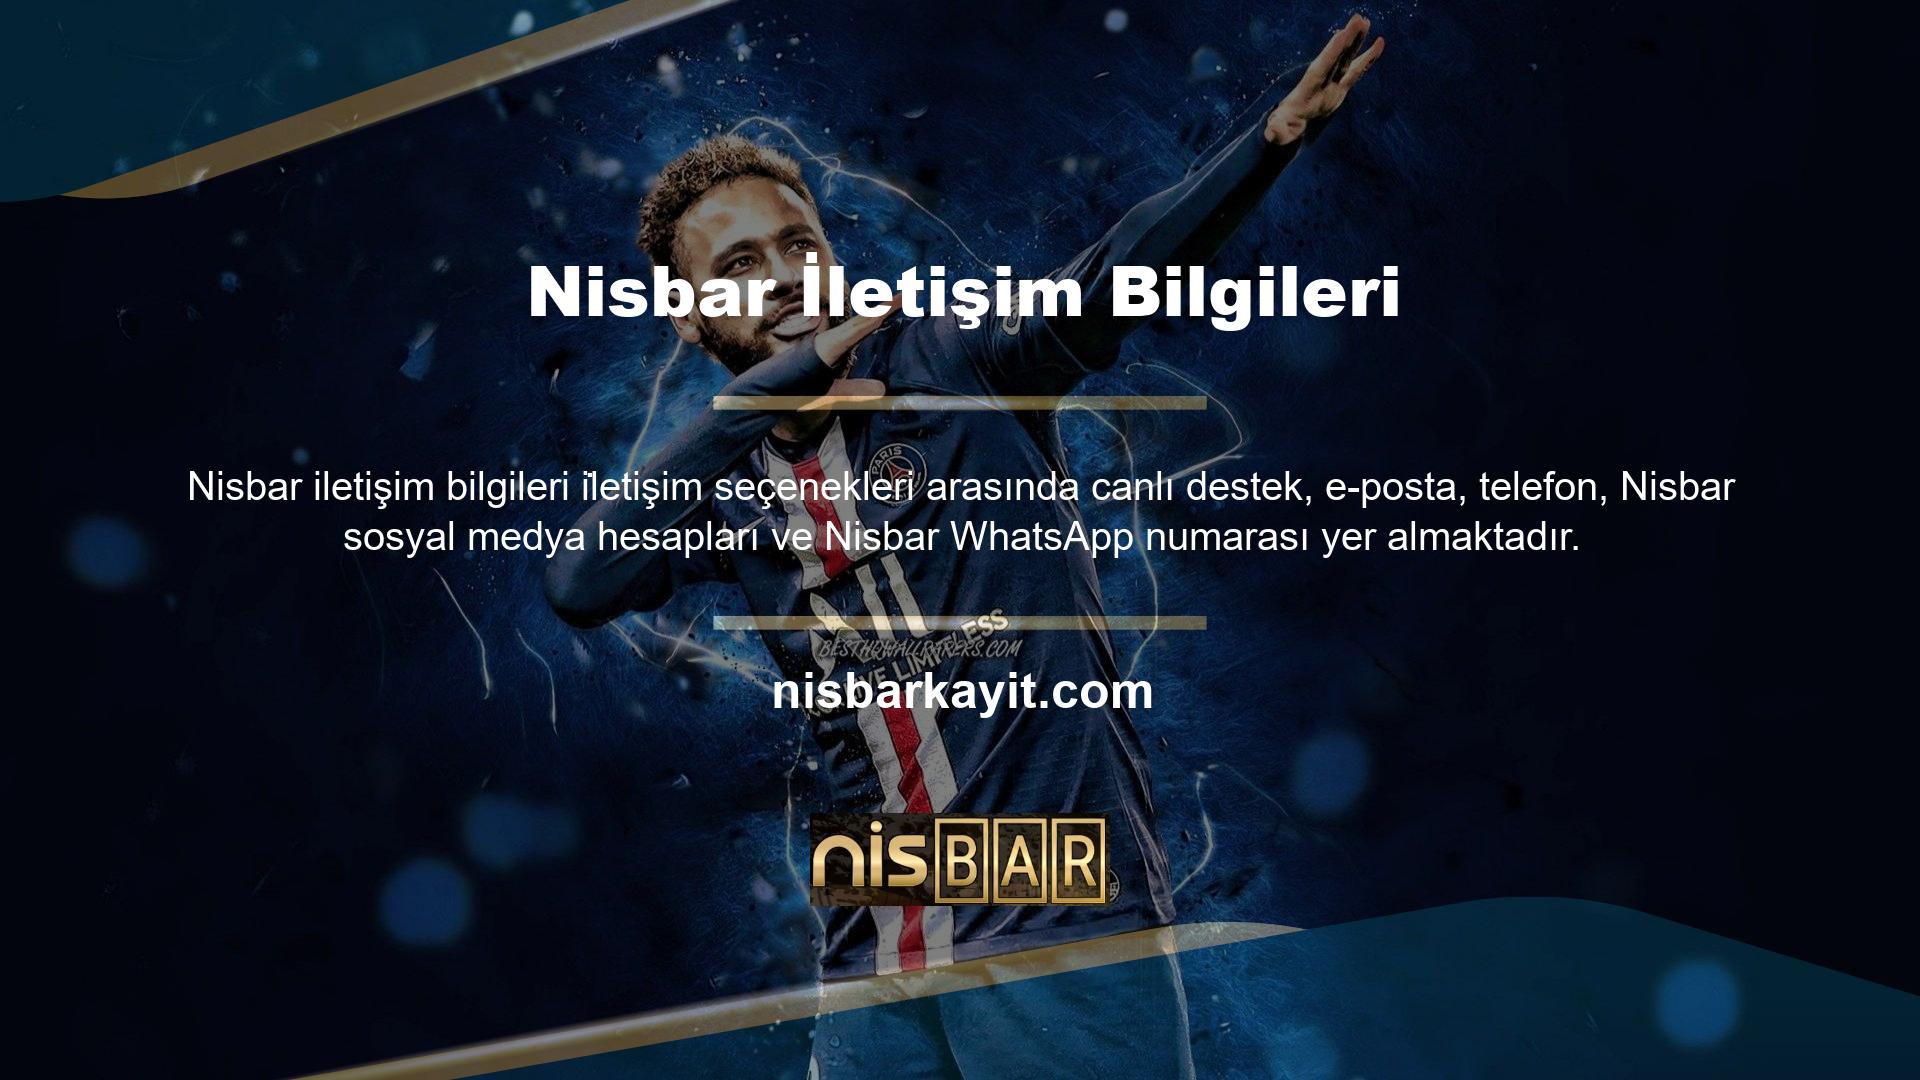 Nisbar, iletişim söz konusu olduğunda her gün ve her zaman kullanıcıları karşılama ruhuyla faaliyet gösteren yurt dışı casino sitelerine işaret ediyor